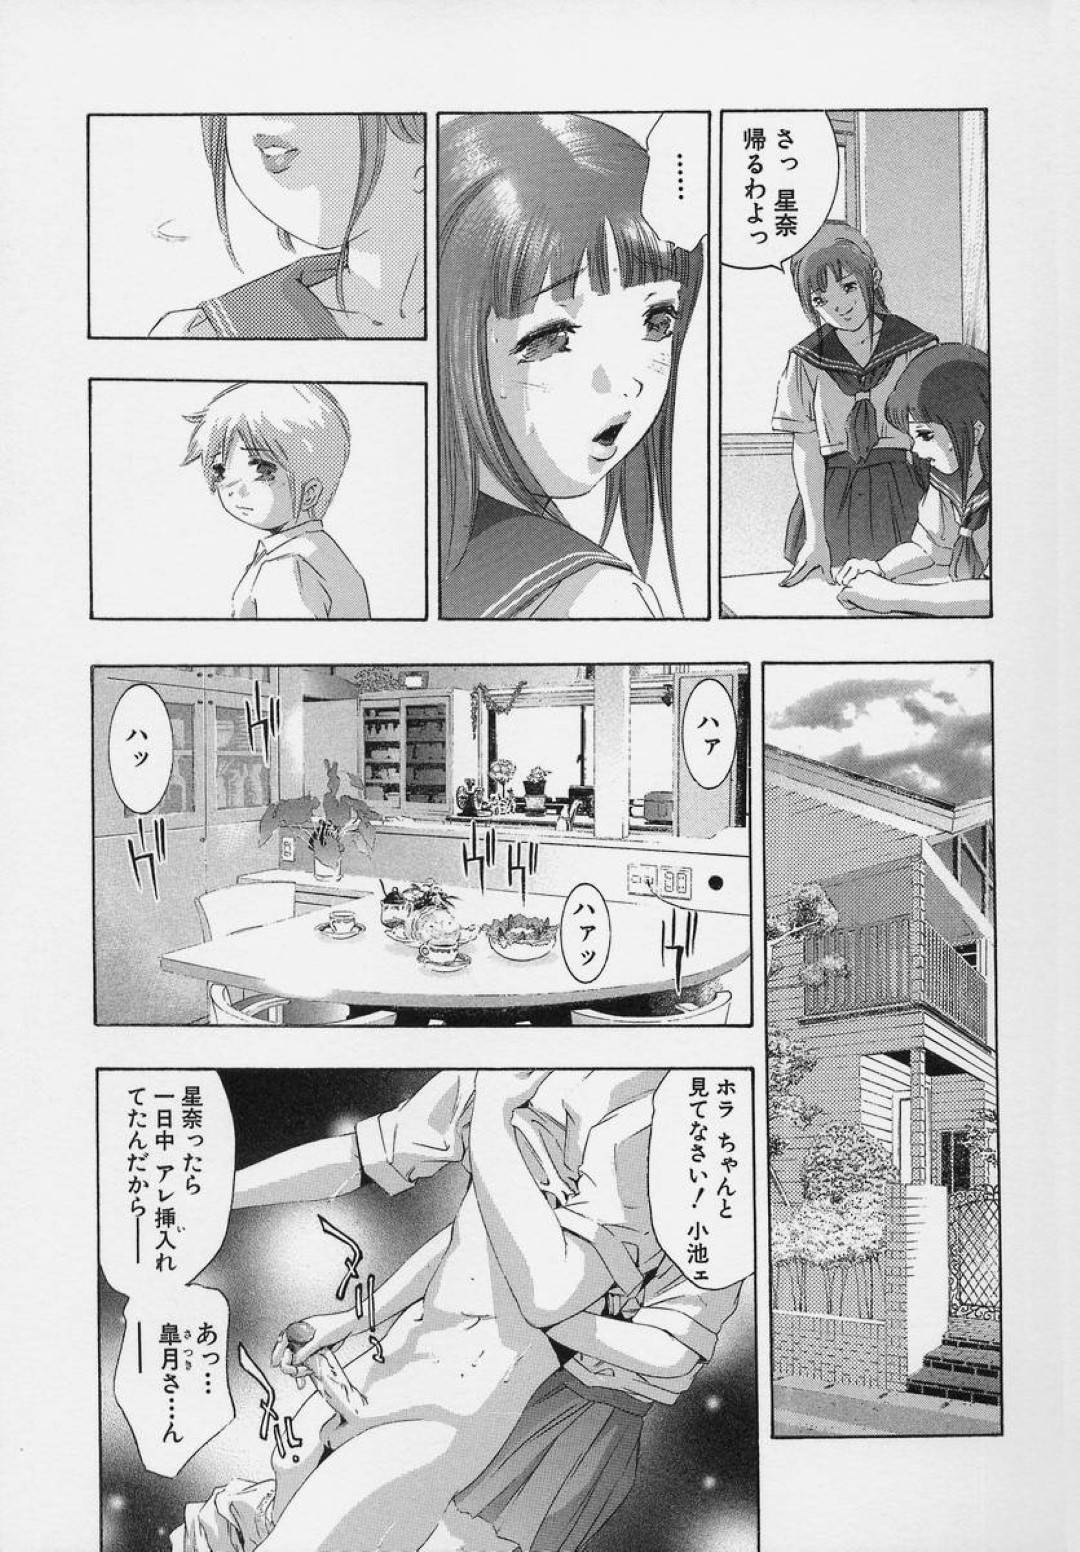 【エロ漫画】ショタと風呂でエッチなことをし続ける2人のスレンダーJK。彼女たちは手コキやフェラで彼を責めまくった挙げ句、アナル3Pセックスまでもしてしまう！